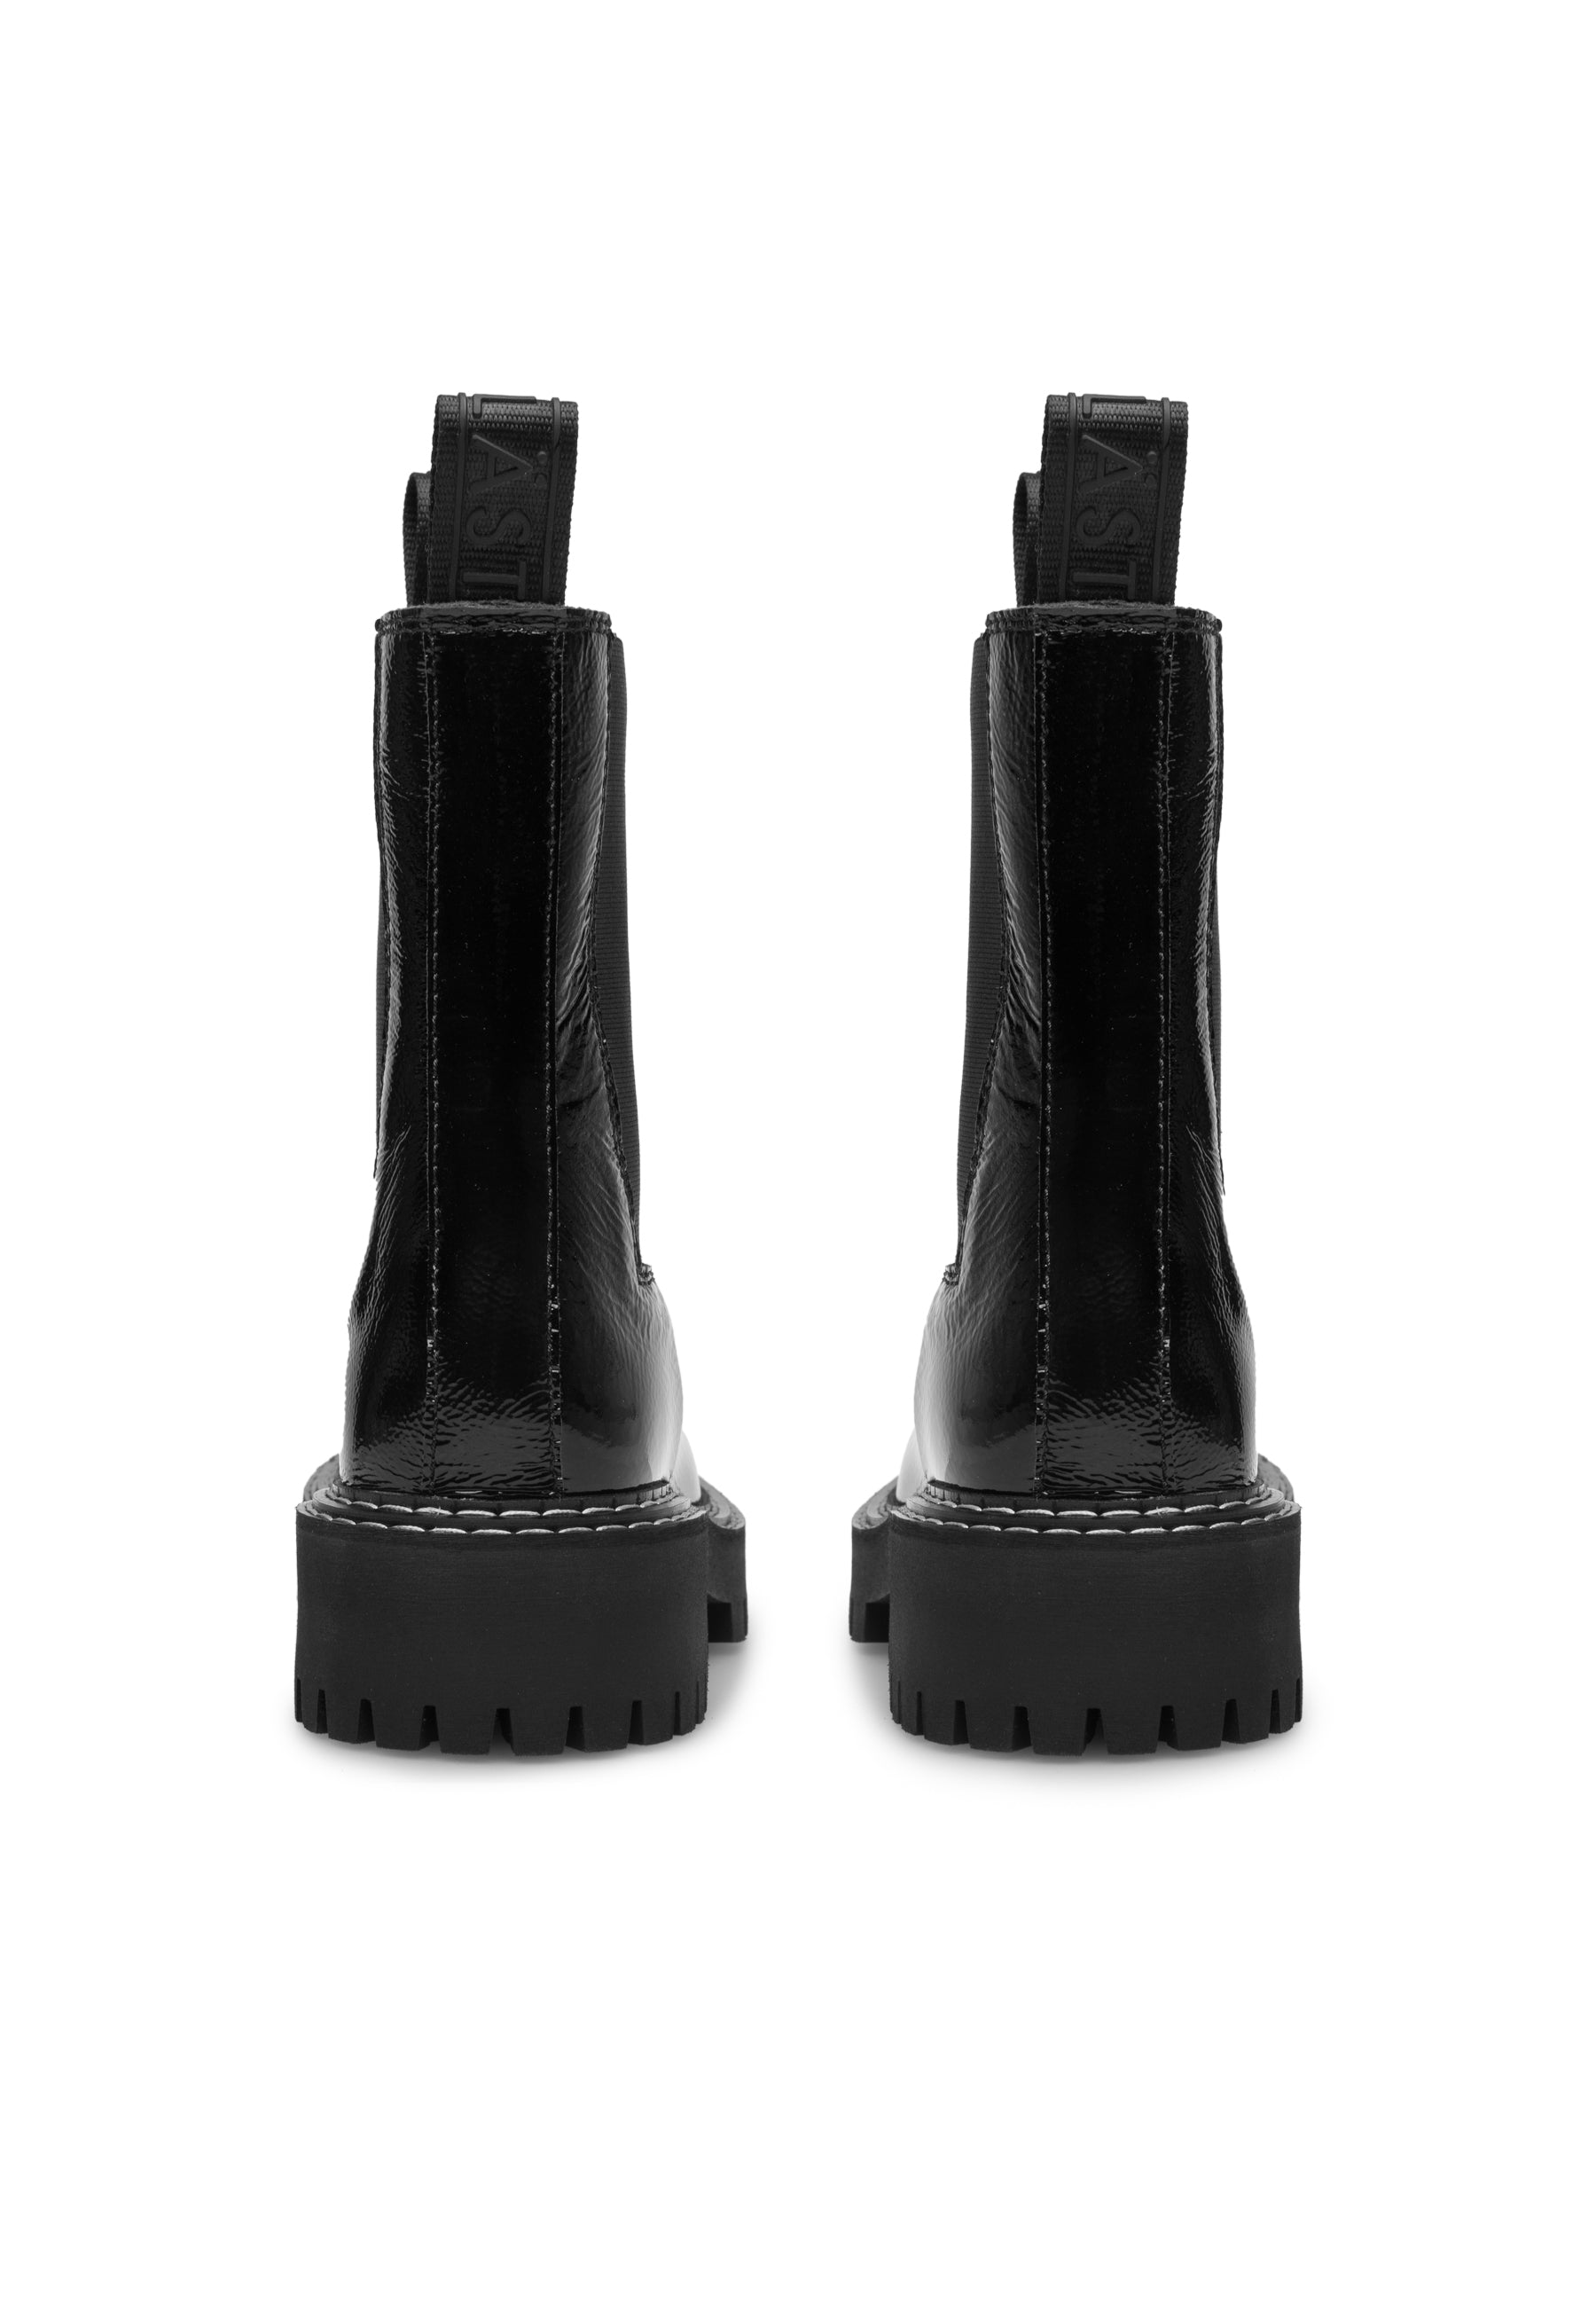 Daze Black Patent Leather Chelsea Boots LAST1677 - 4